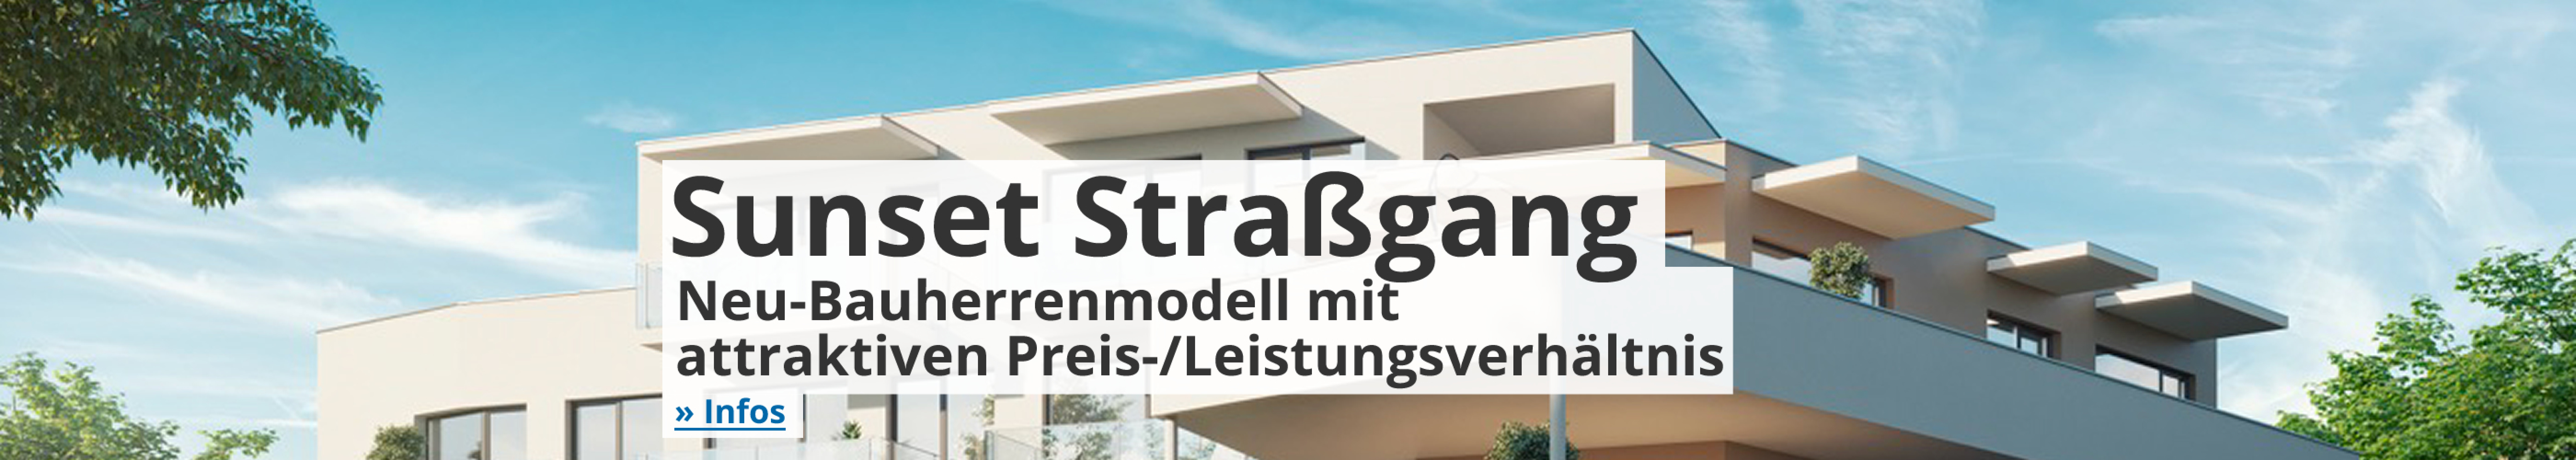 Sunset Stragang - Neu-Bauherrenmodell